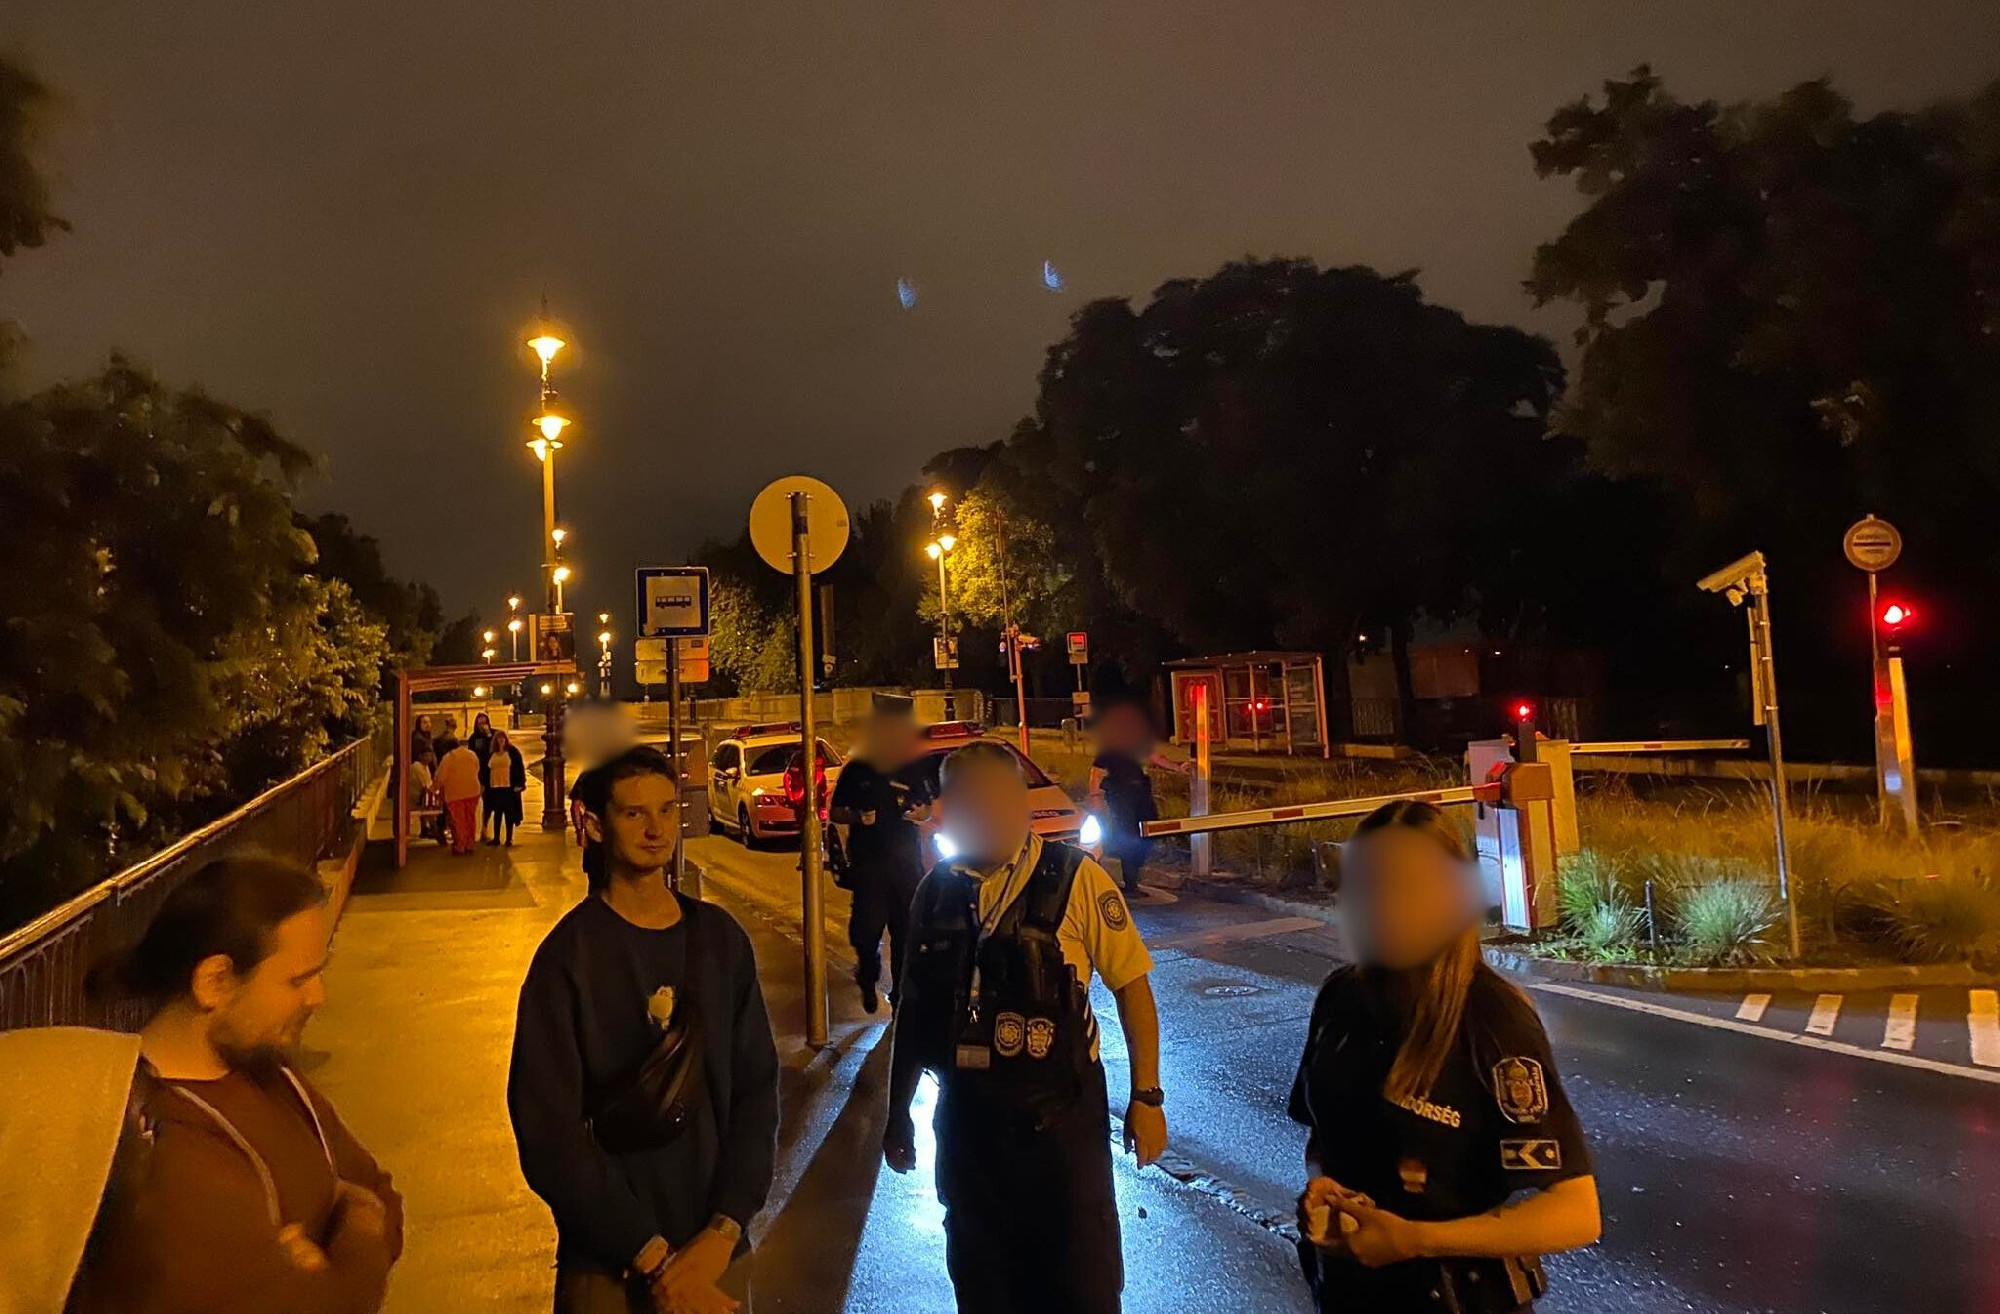 „Pedofidesz”, „Stop akku” – írták a Békemenet útvonalára, rendőrök igazoltatták őket